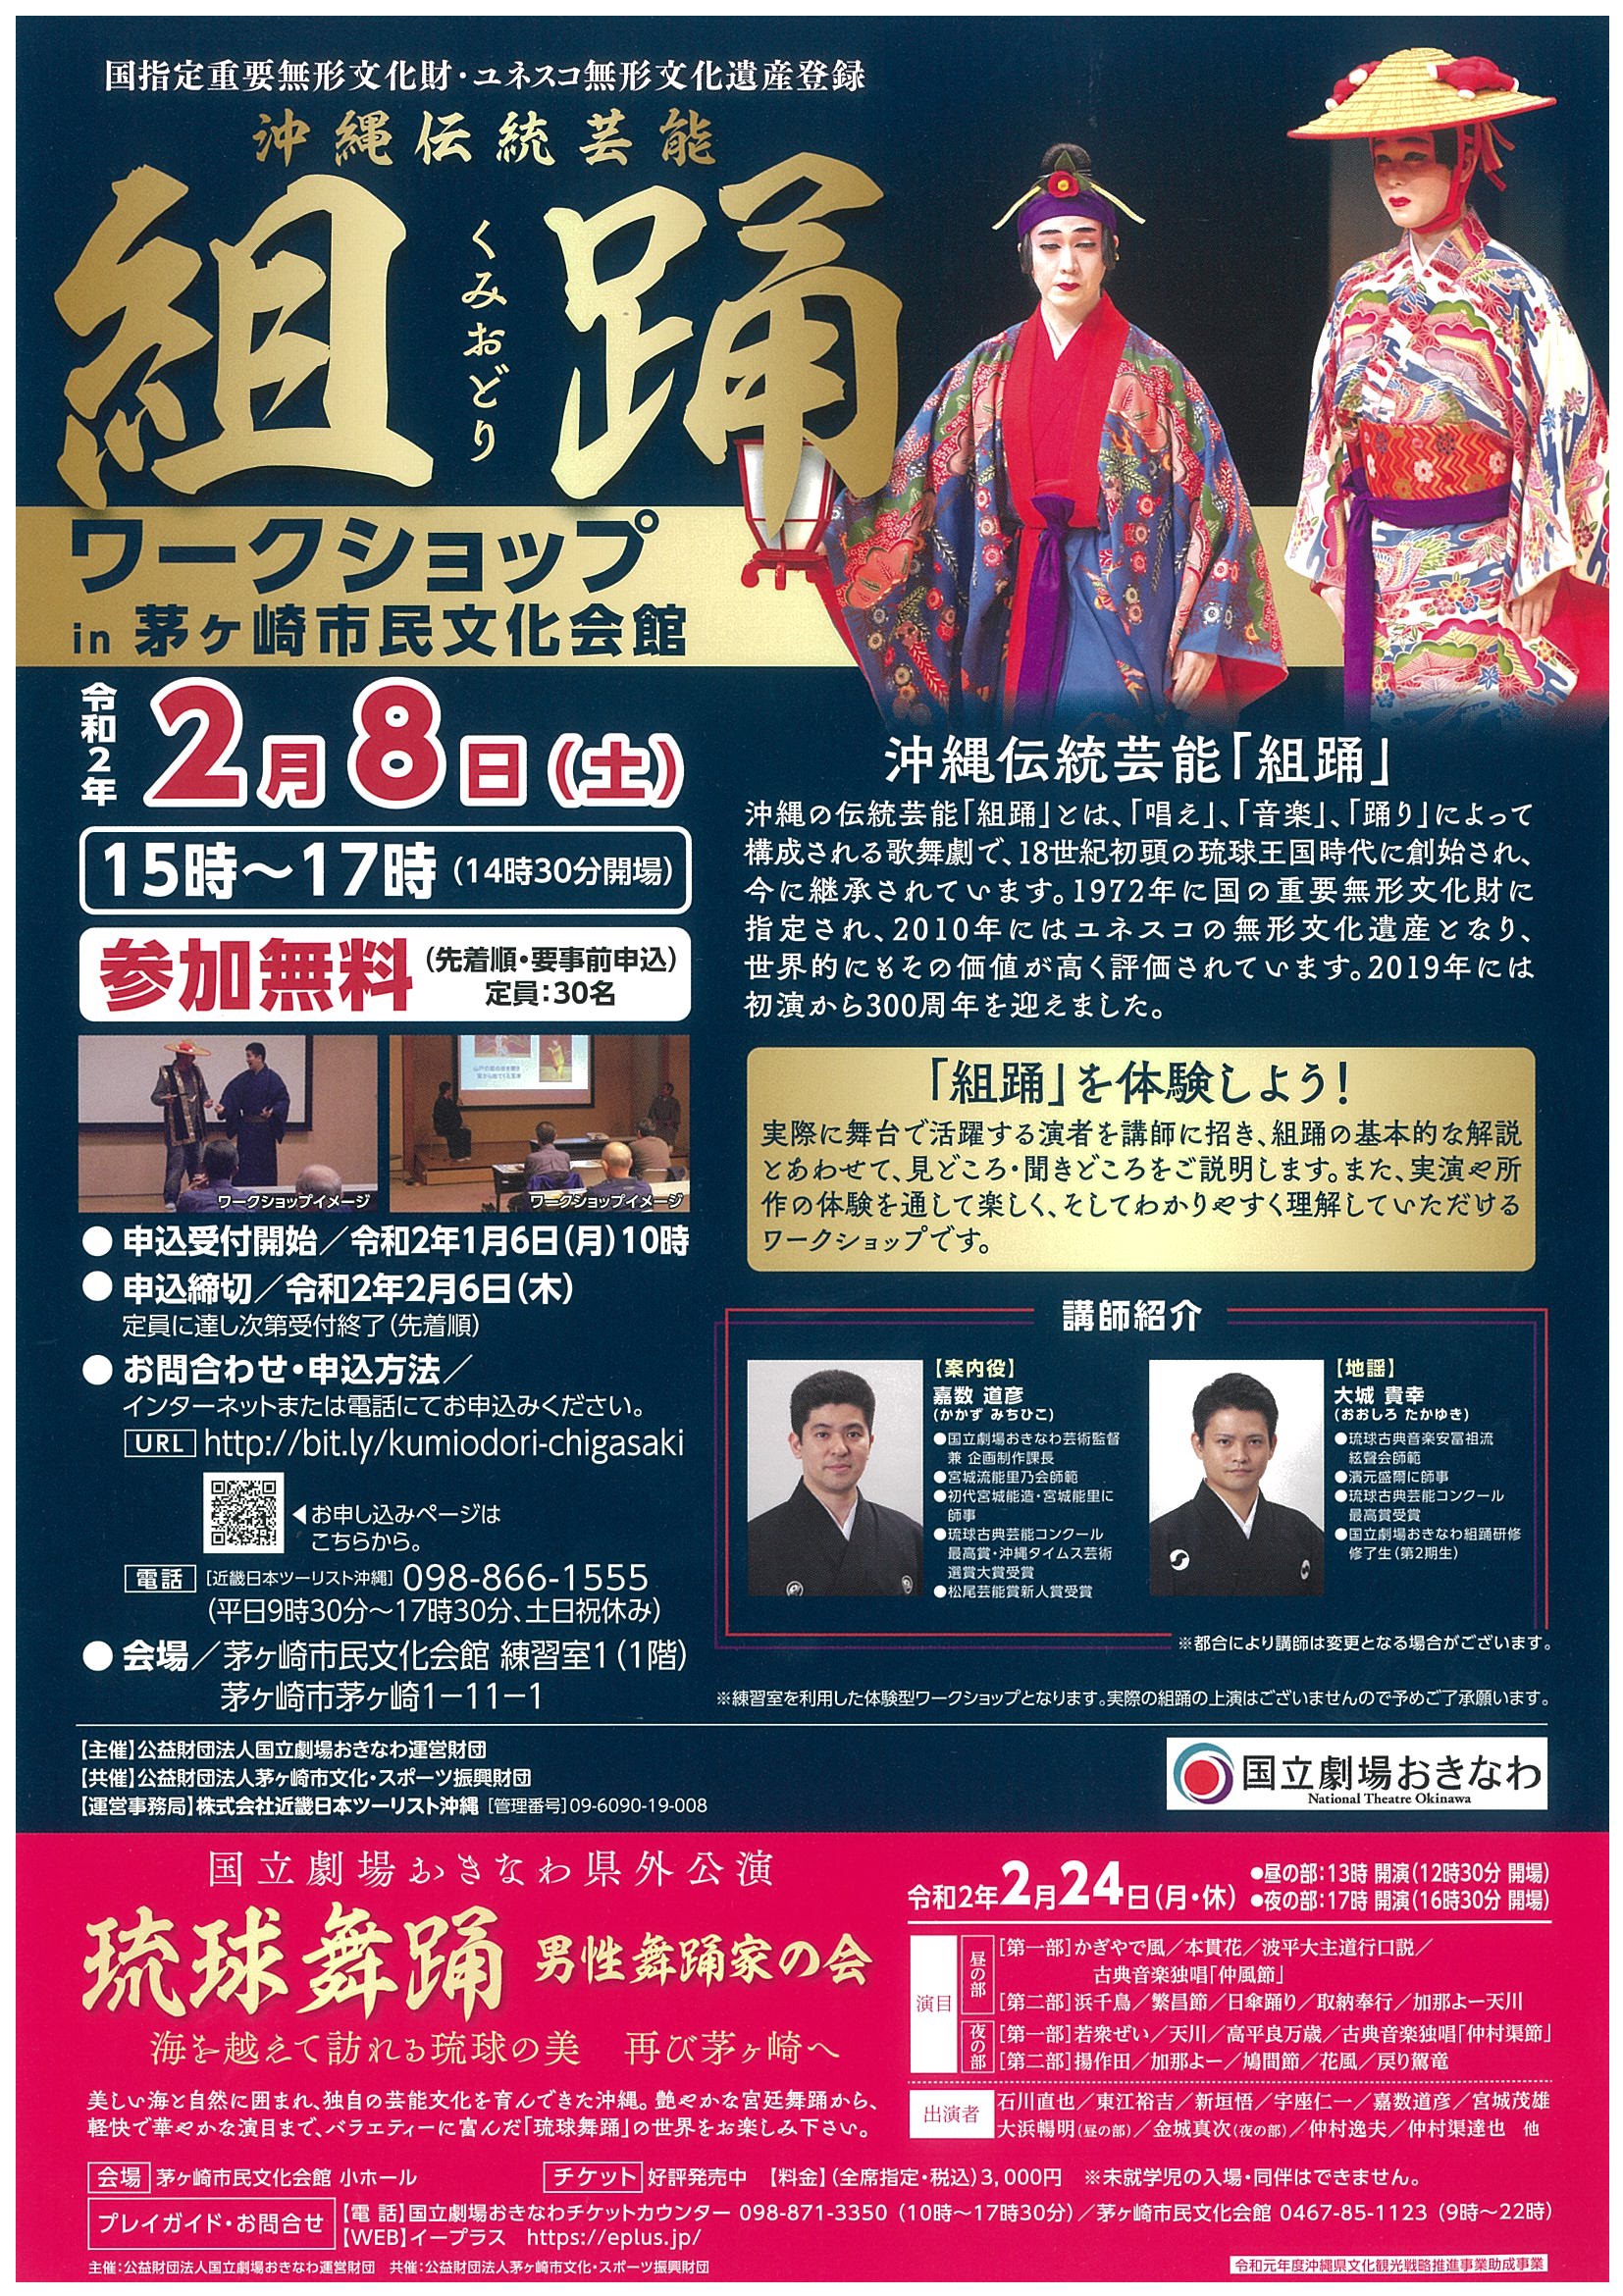 組踊ワークショップ ＩＮ 茅ヶ崎市民文化会館のイメージ